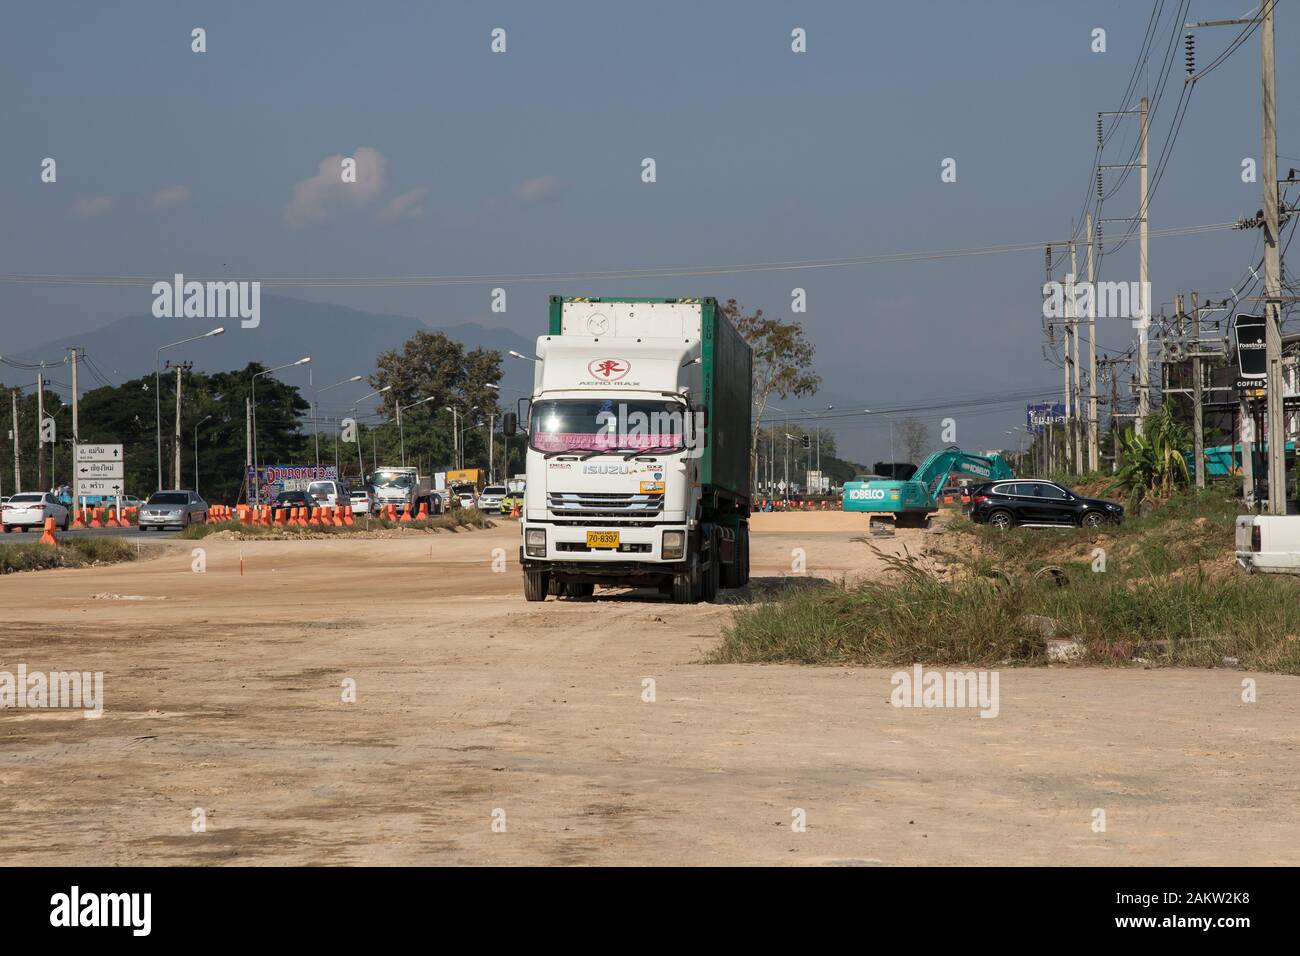 Chiang Mai, Thaïlande - 7 janvier 2020 : Conteneurs de camion remorque logistique internationale forte. Photo road no.1001 à environ 8 km du centre-ville Banque D'Images